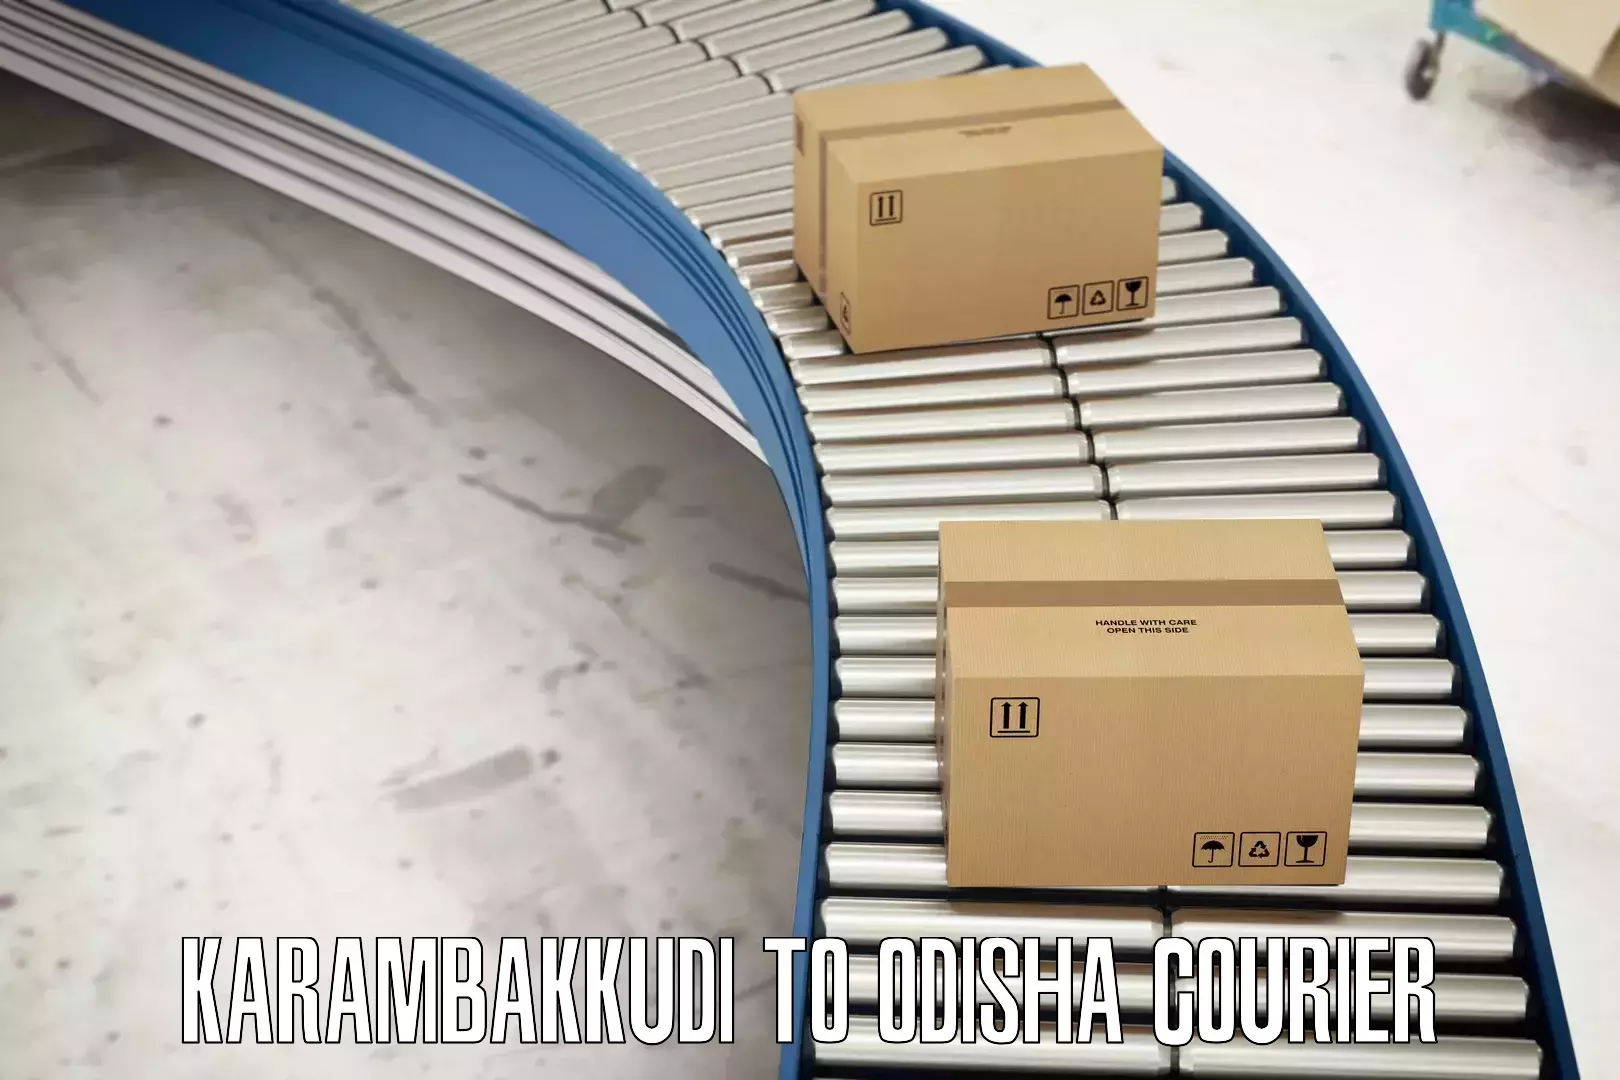 Special handling courier Karambakkudi to Rourkela